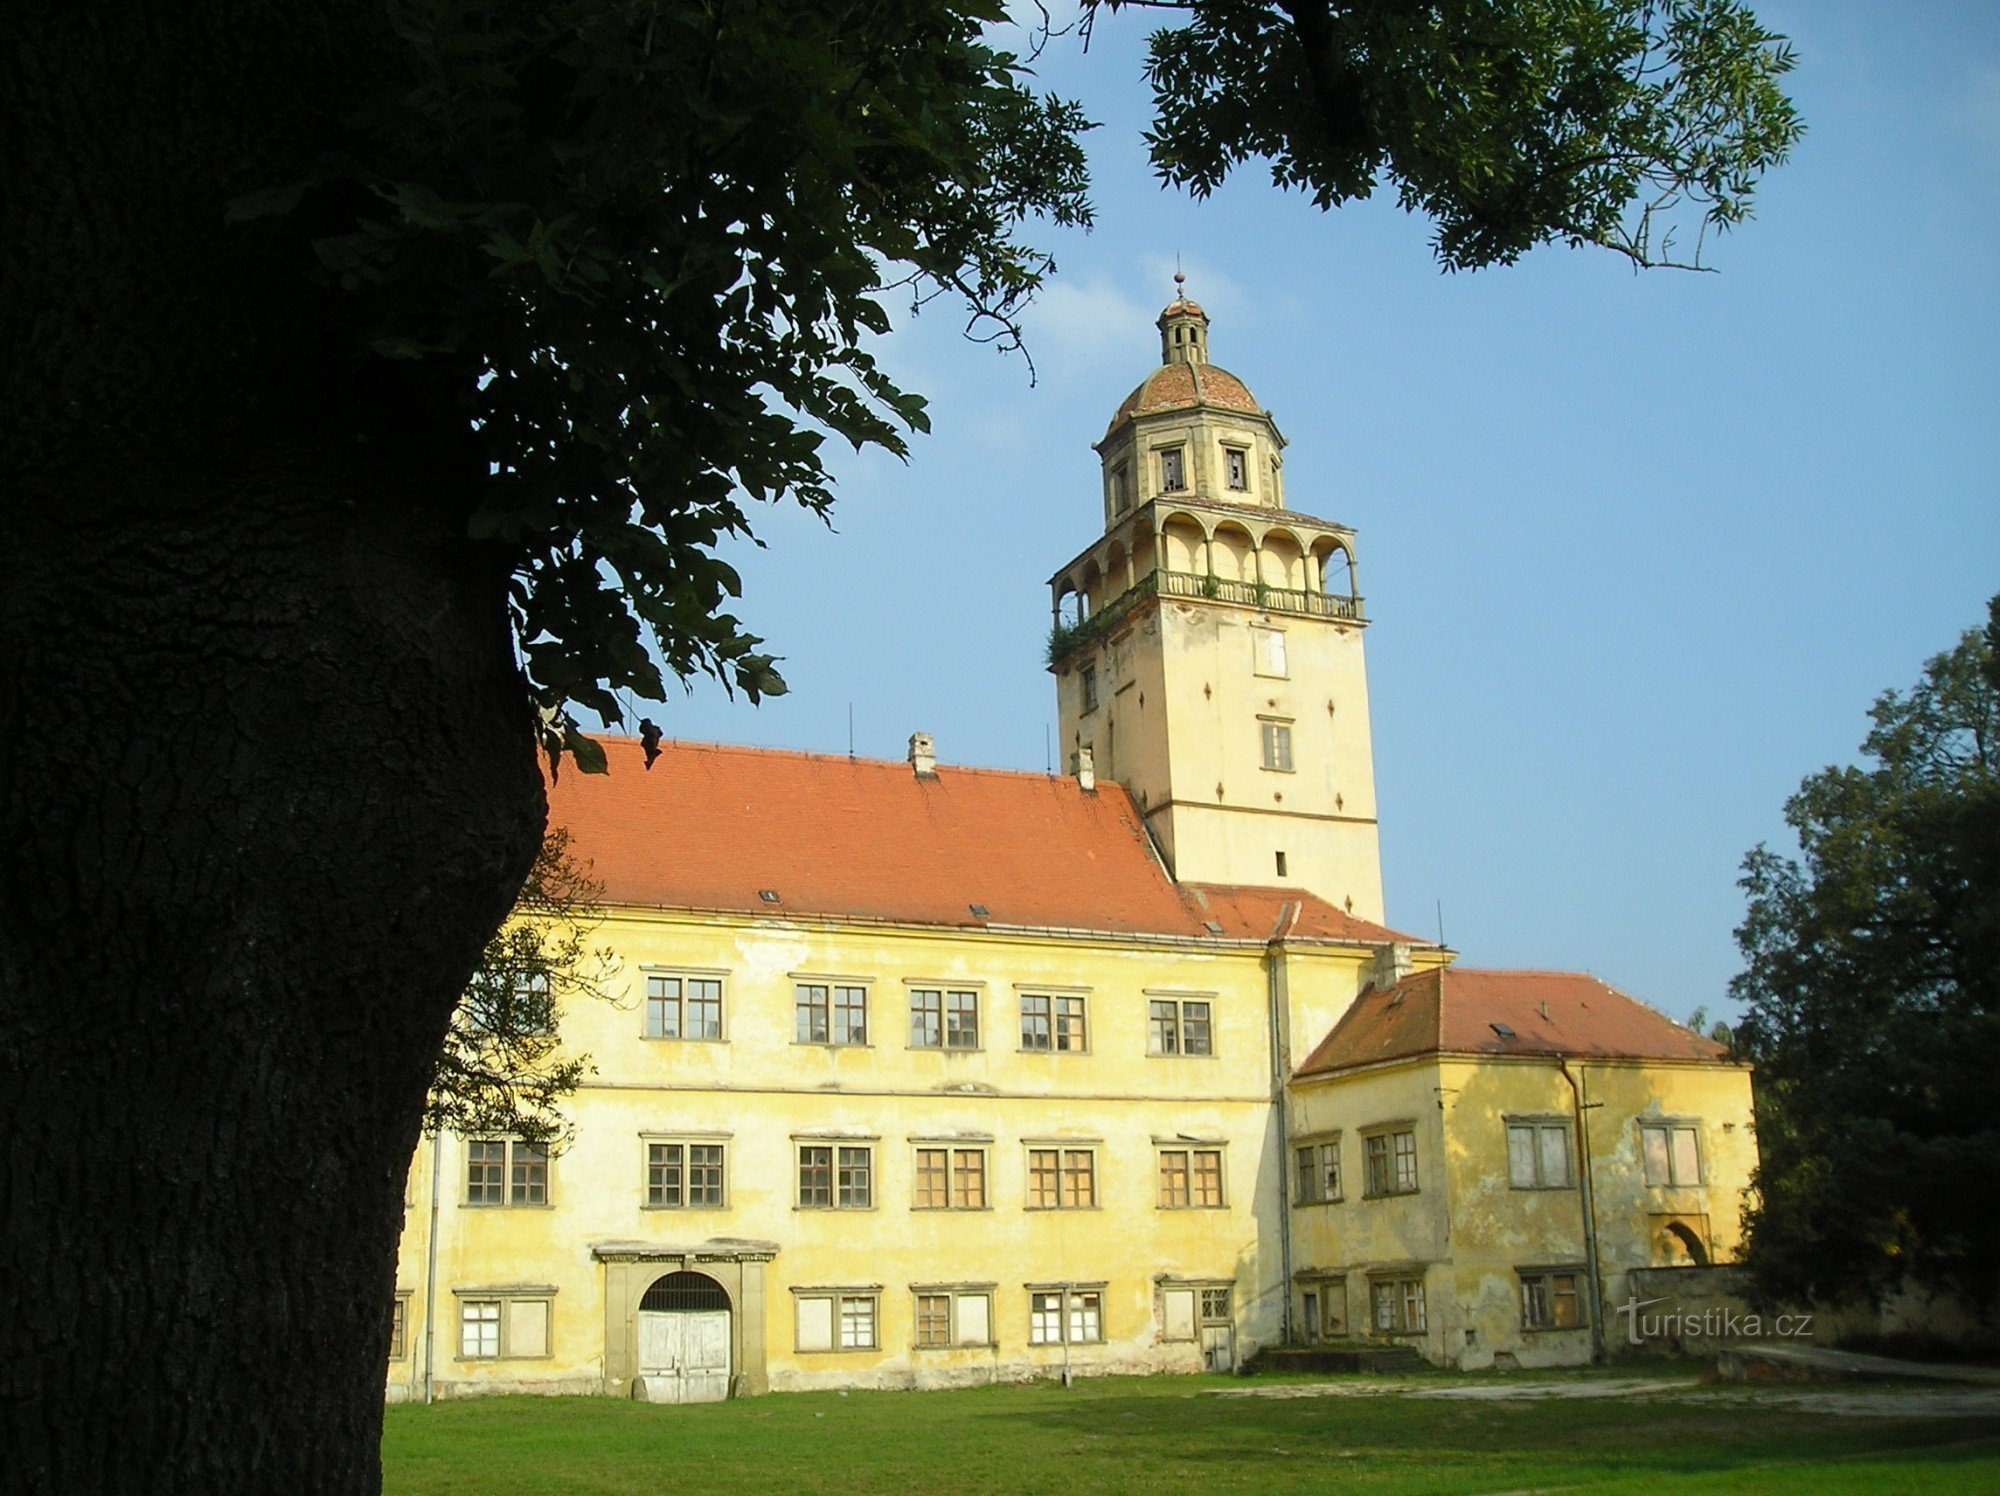 Dvorac Moravský Krumlov